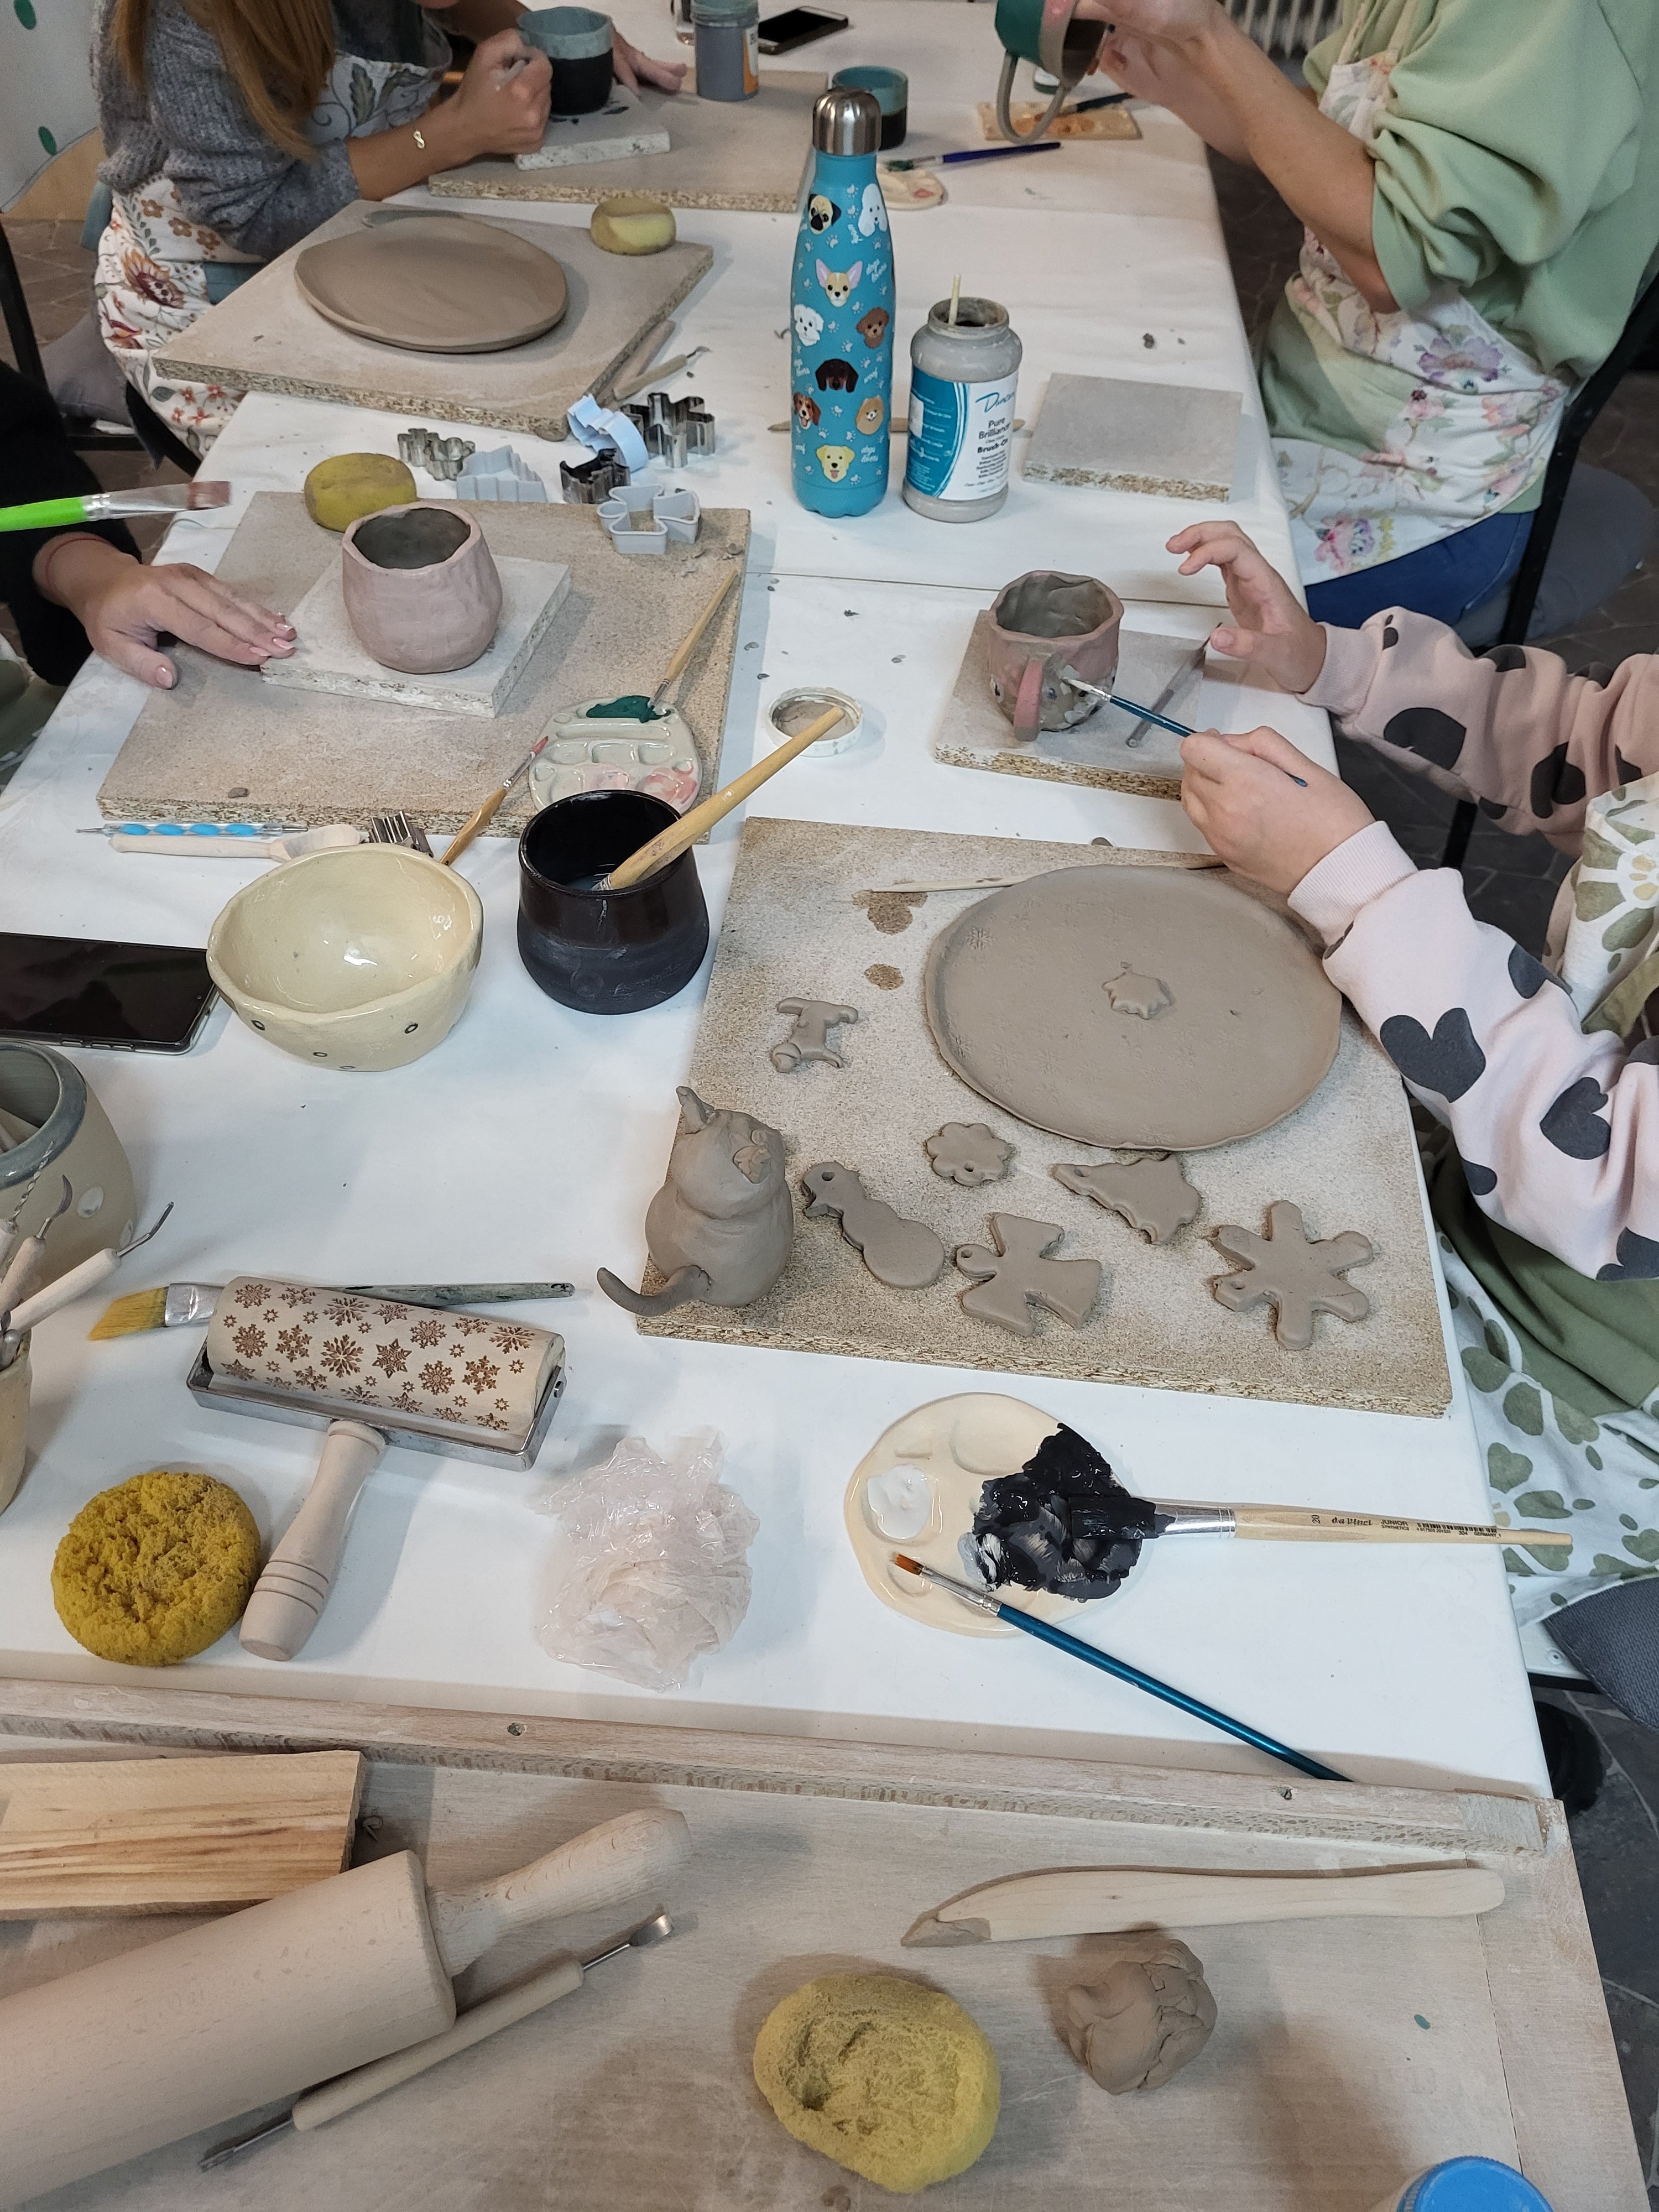 Enodnevna delavnica keramike - Četrtkovo popoldne (29.2.2023) 16.30-18.30